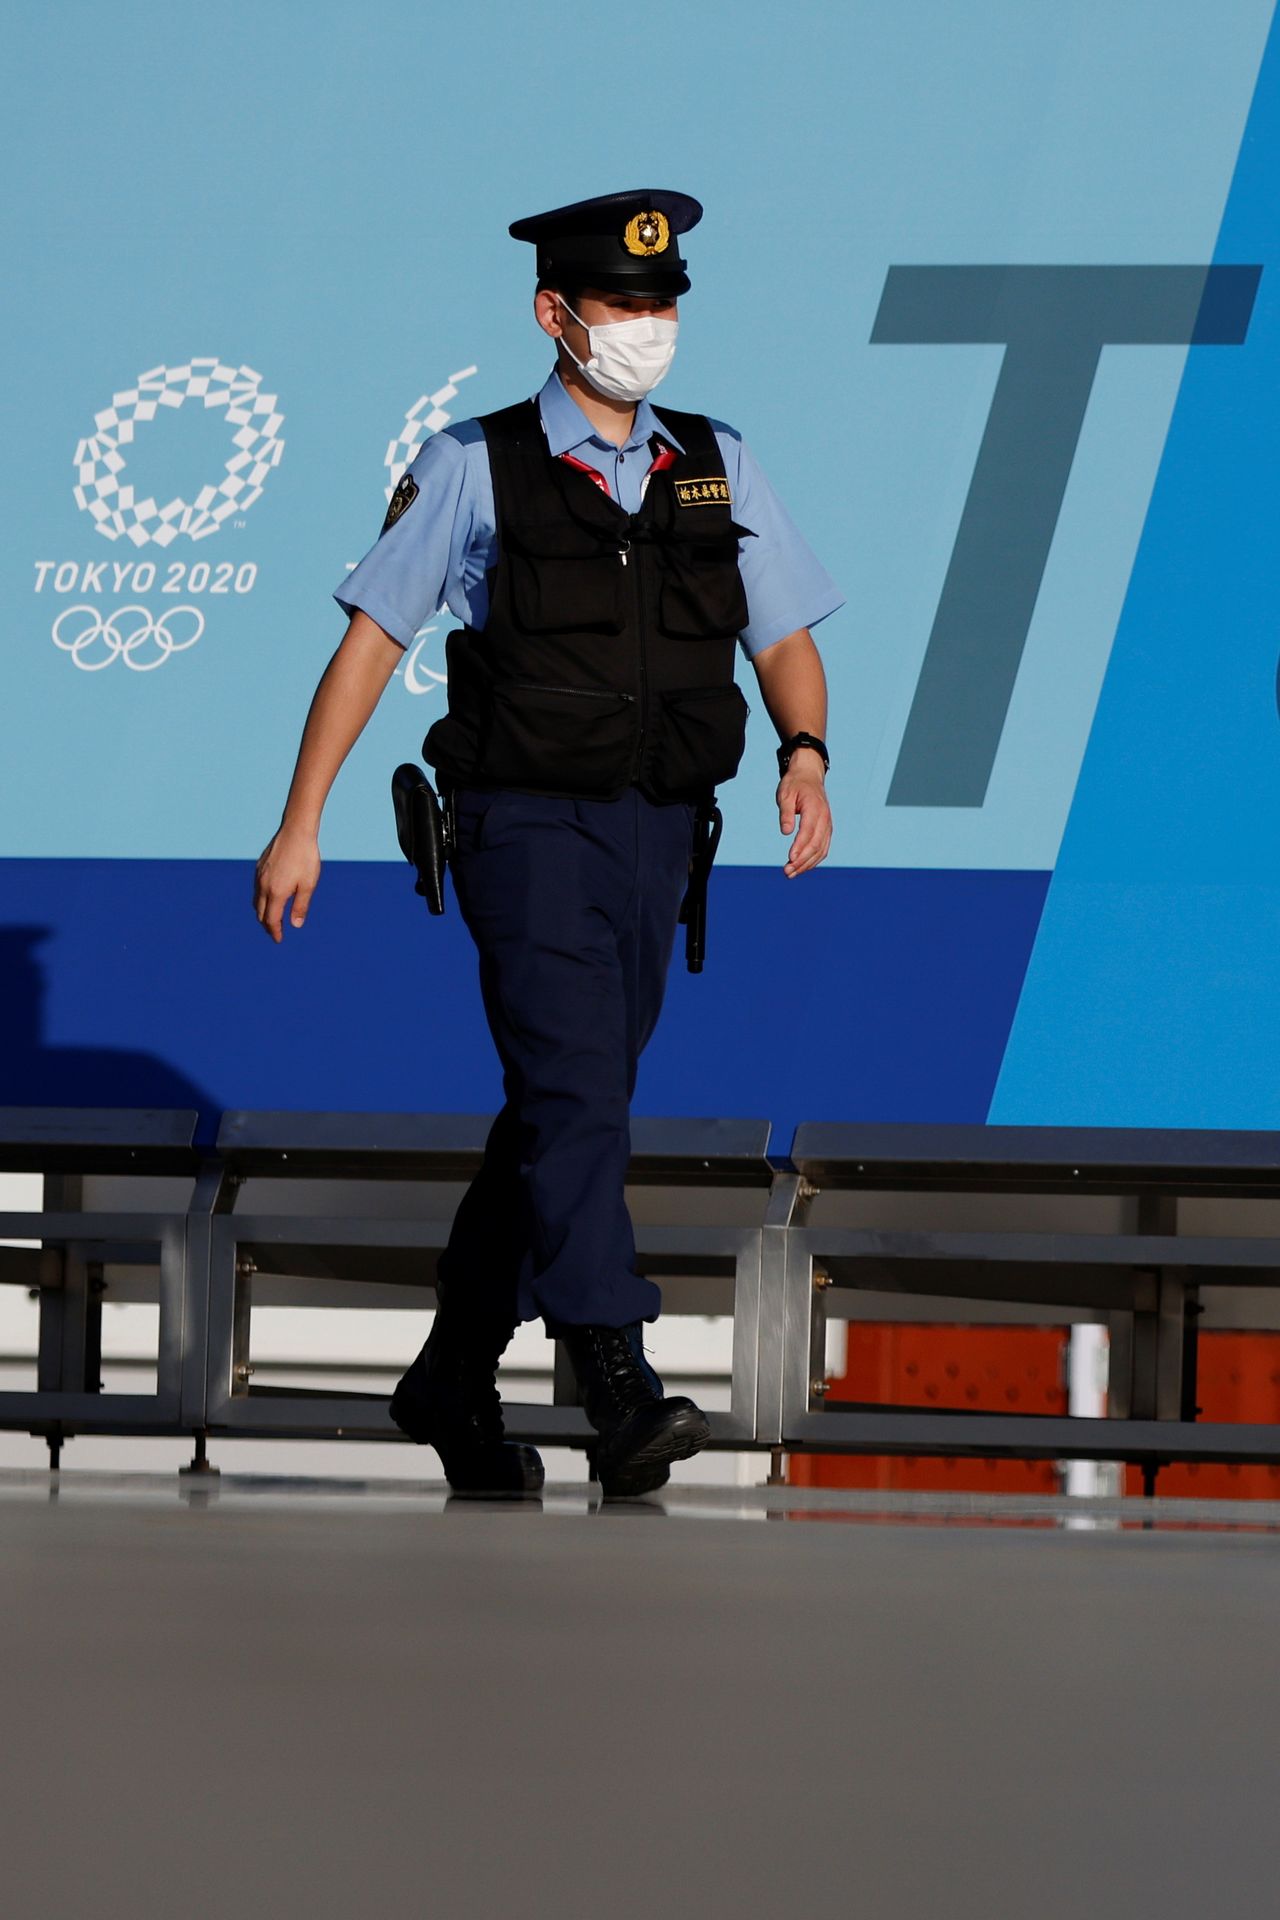 شرطي يضع كمامة للوقاية من فيروس كورونا في طوكيو يوم 16 يوليو تموز 2021. تصوير: توماس بيتر - رويترز.